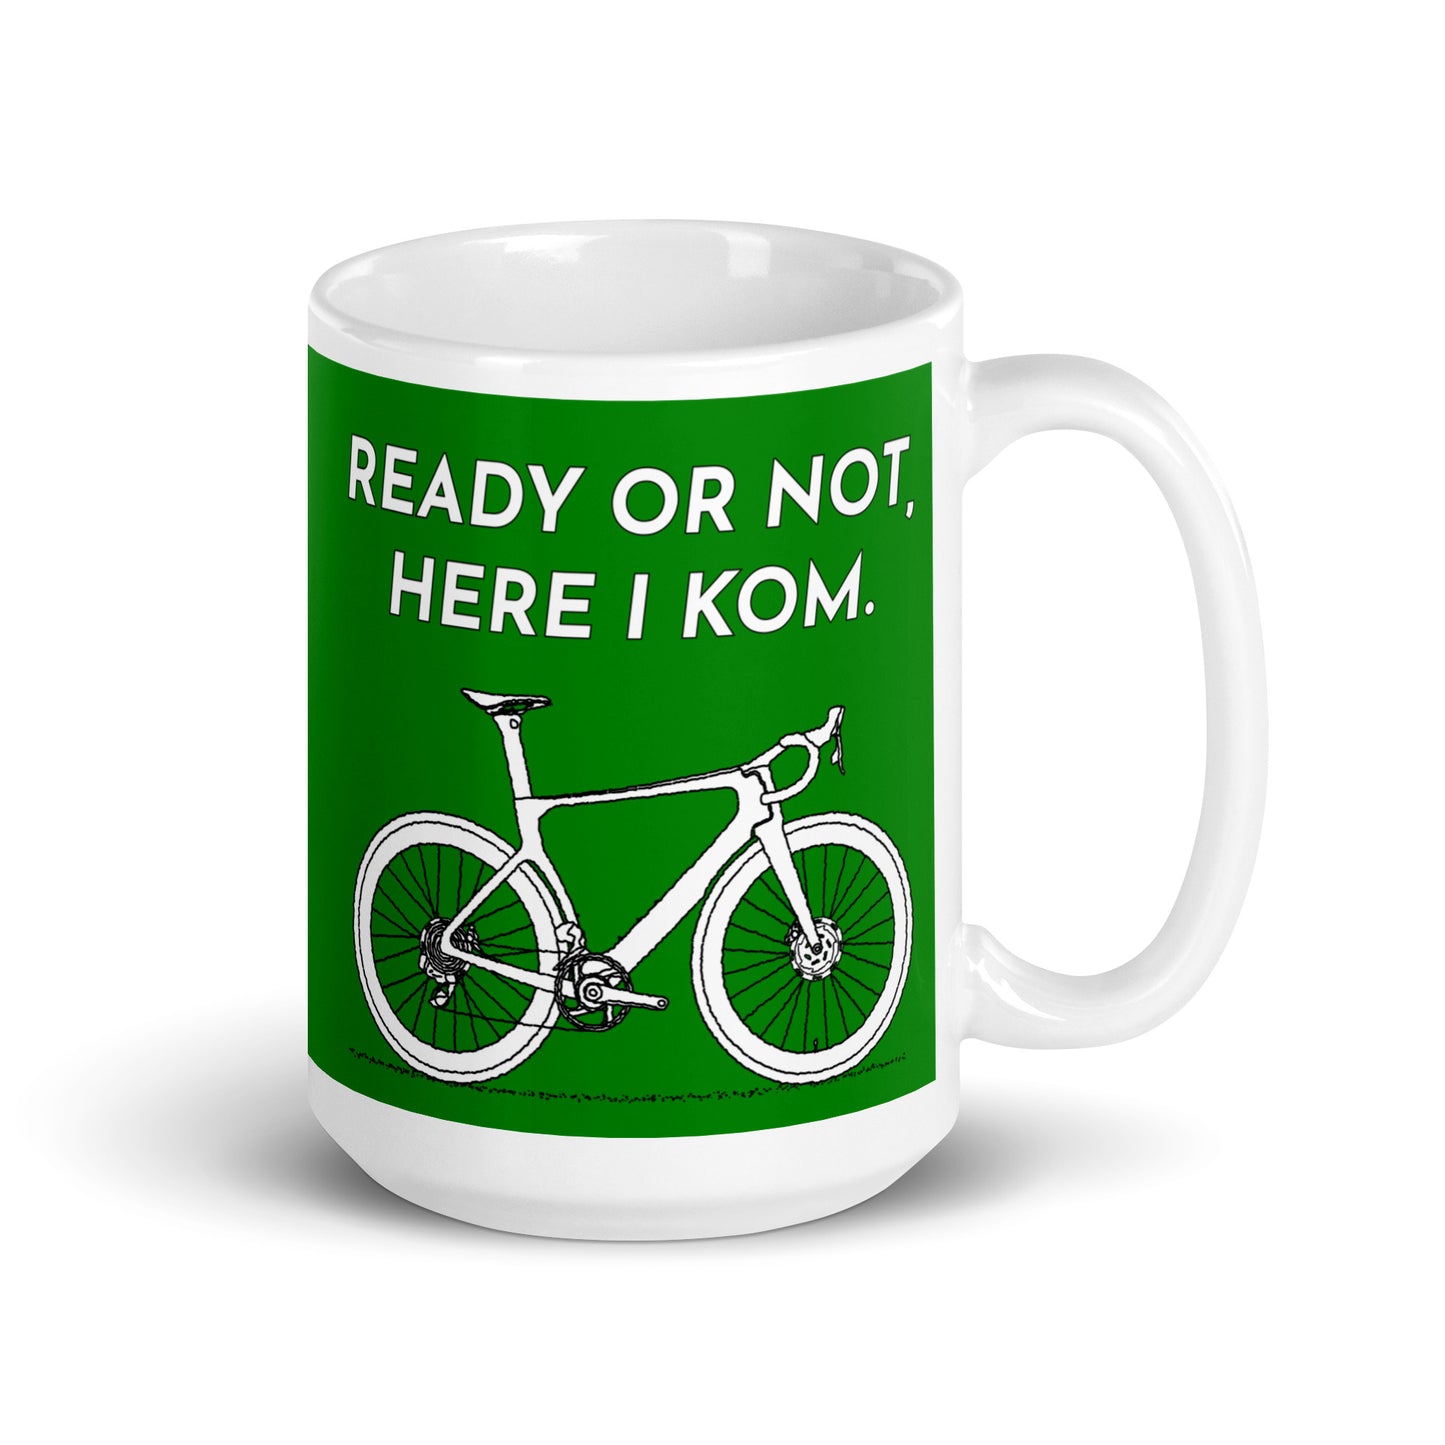 Ready Or Not Here I KOM, Green Road Bike Cyclist Mug